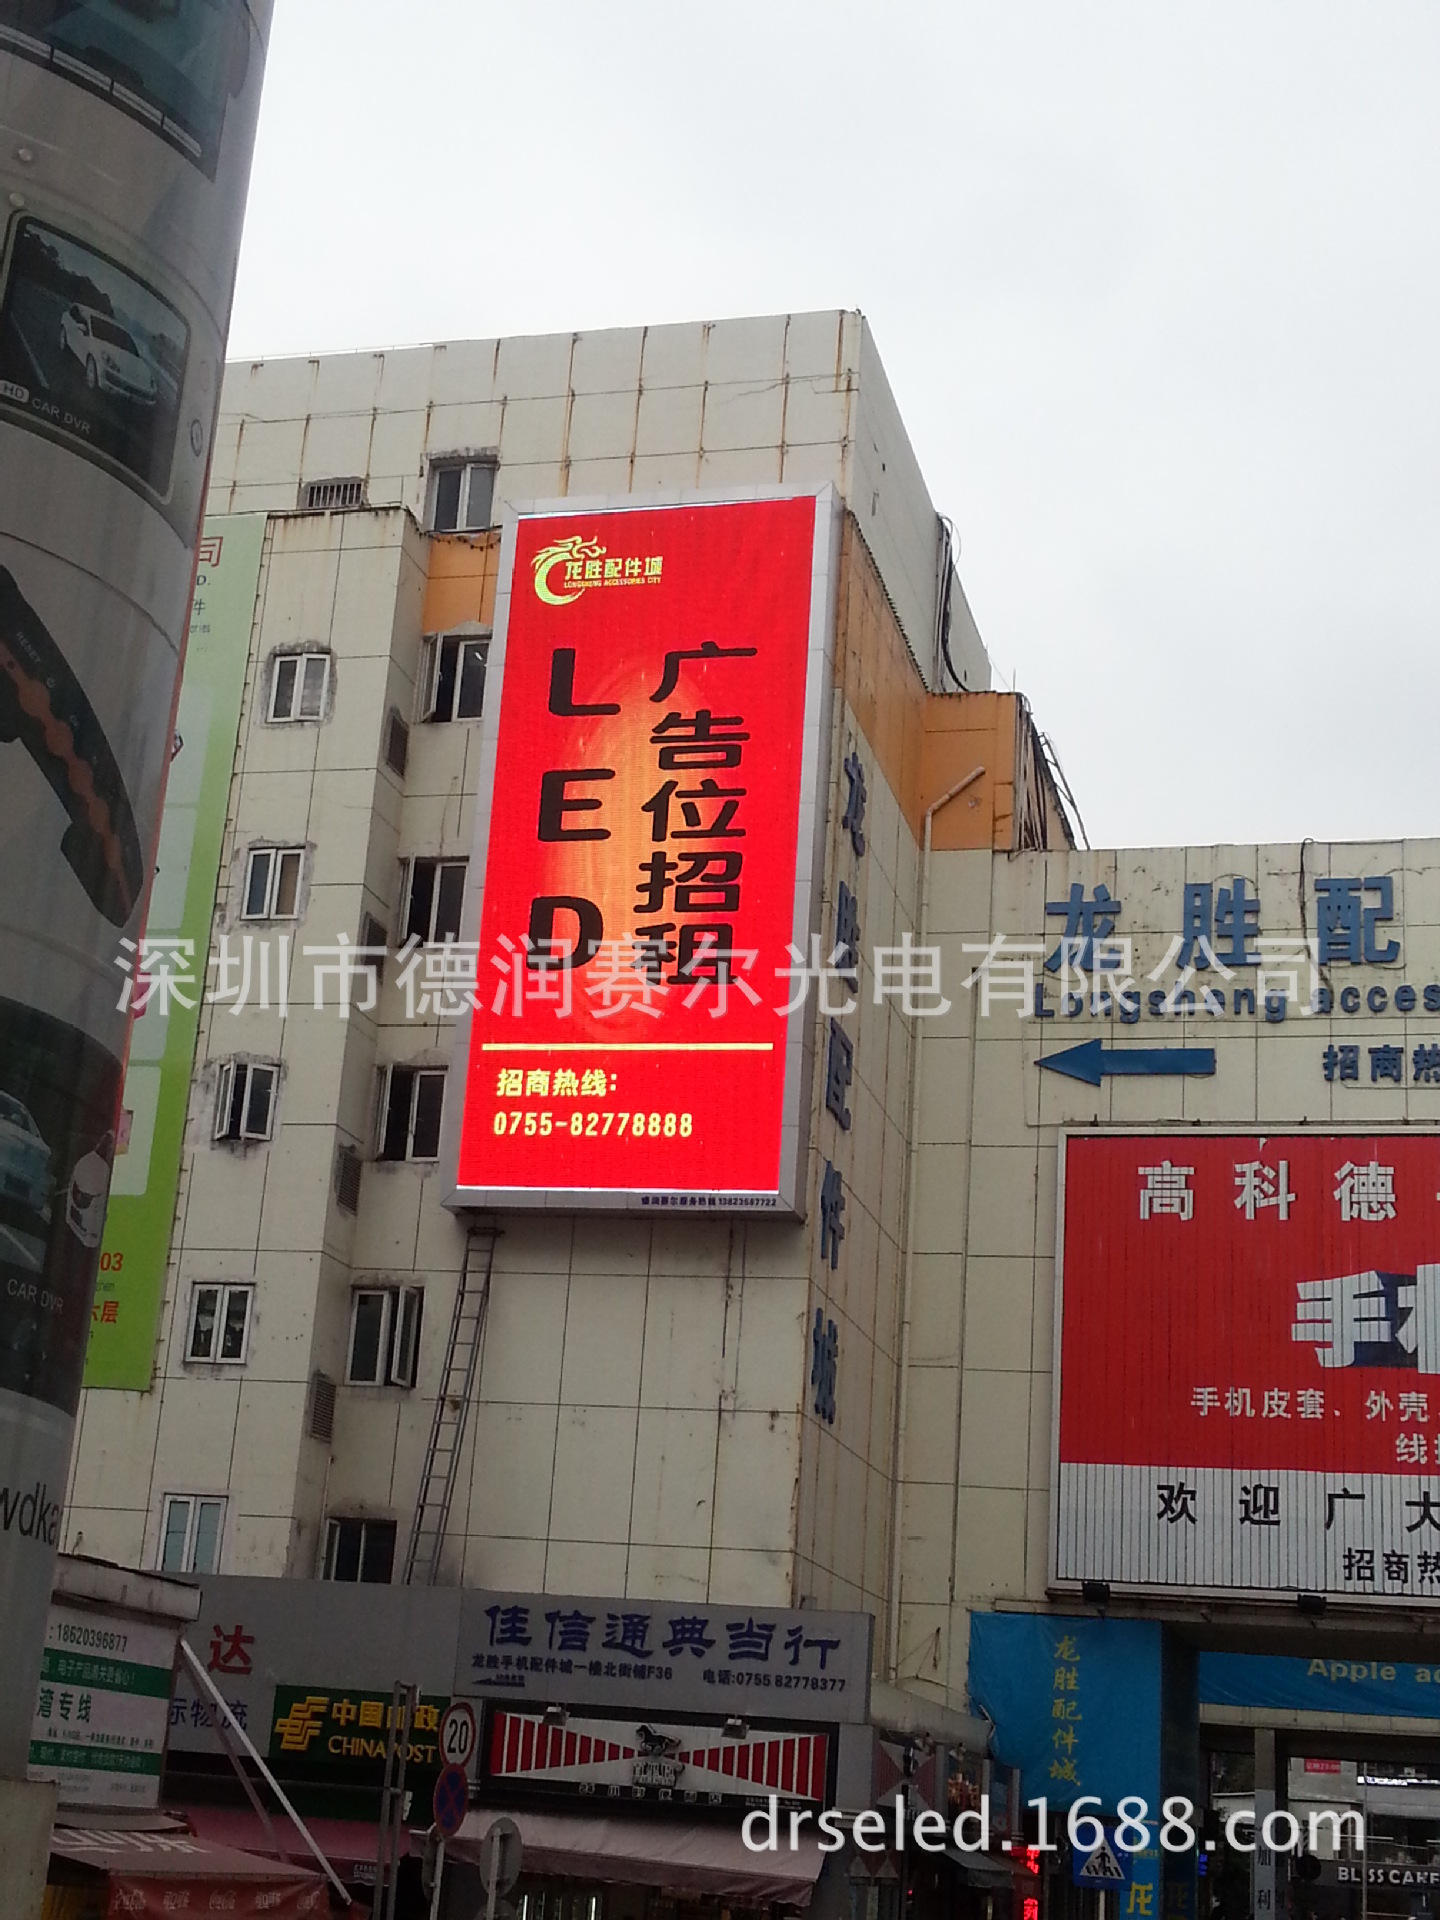 广州LED显示屏户外全彩P10 8 6学校政府机构电子广告大屏幕租赁屏